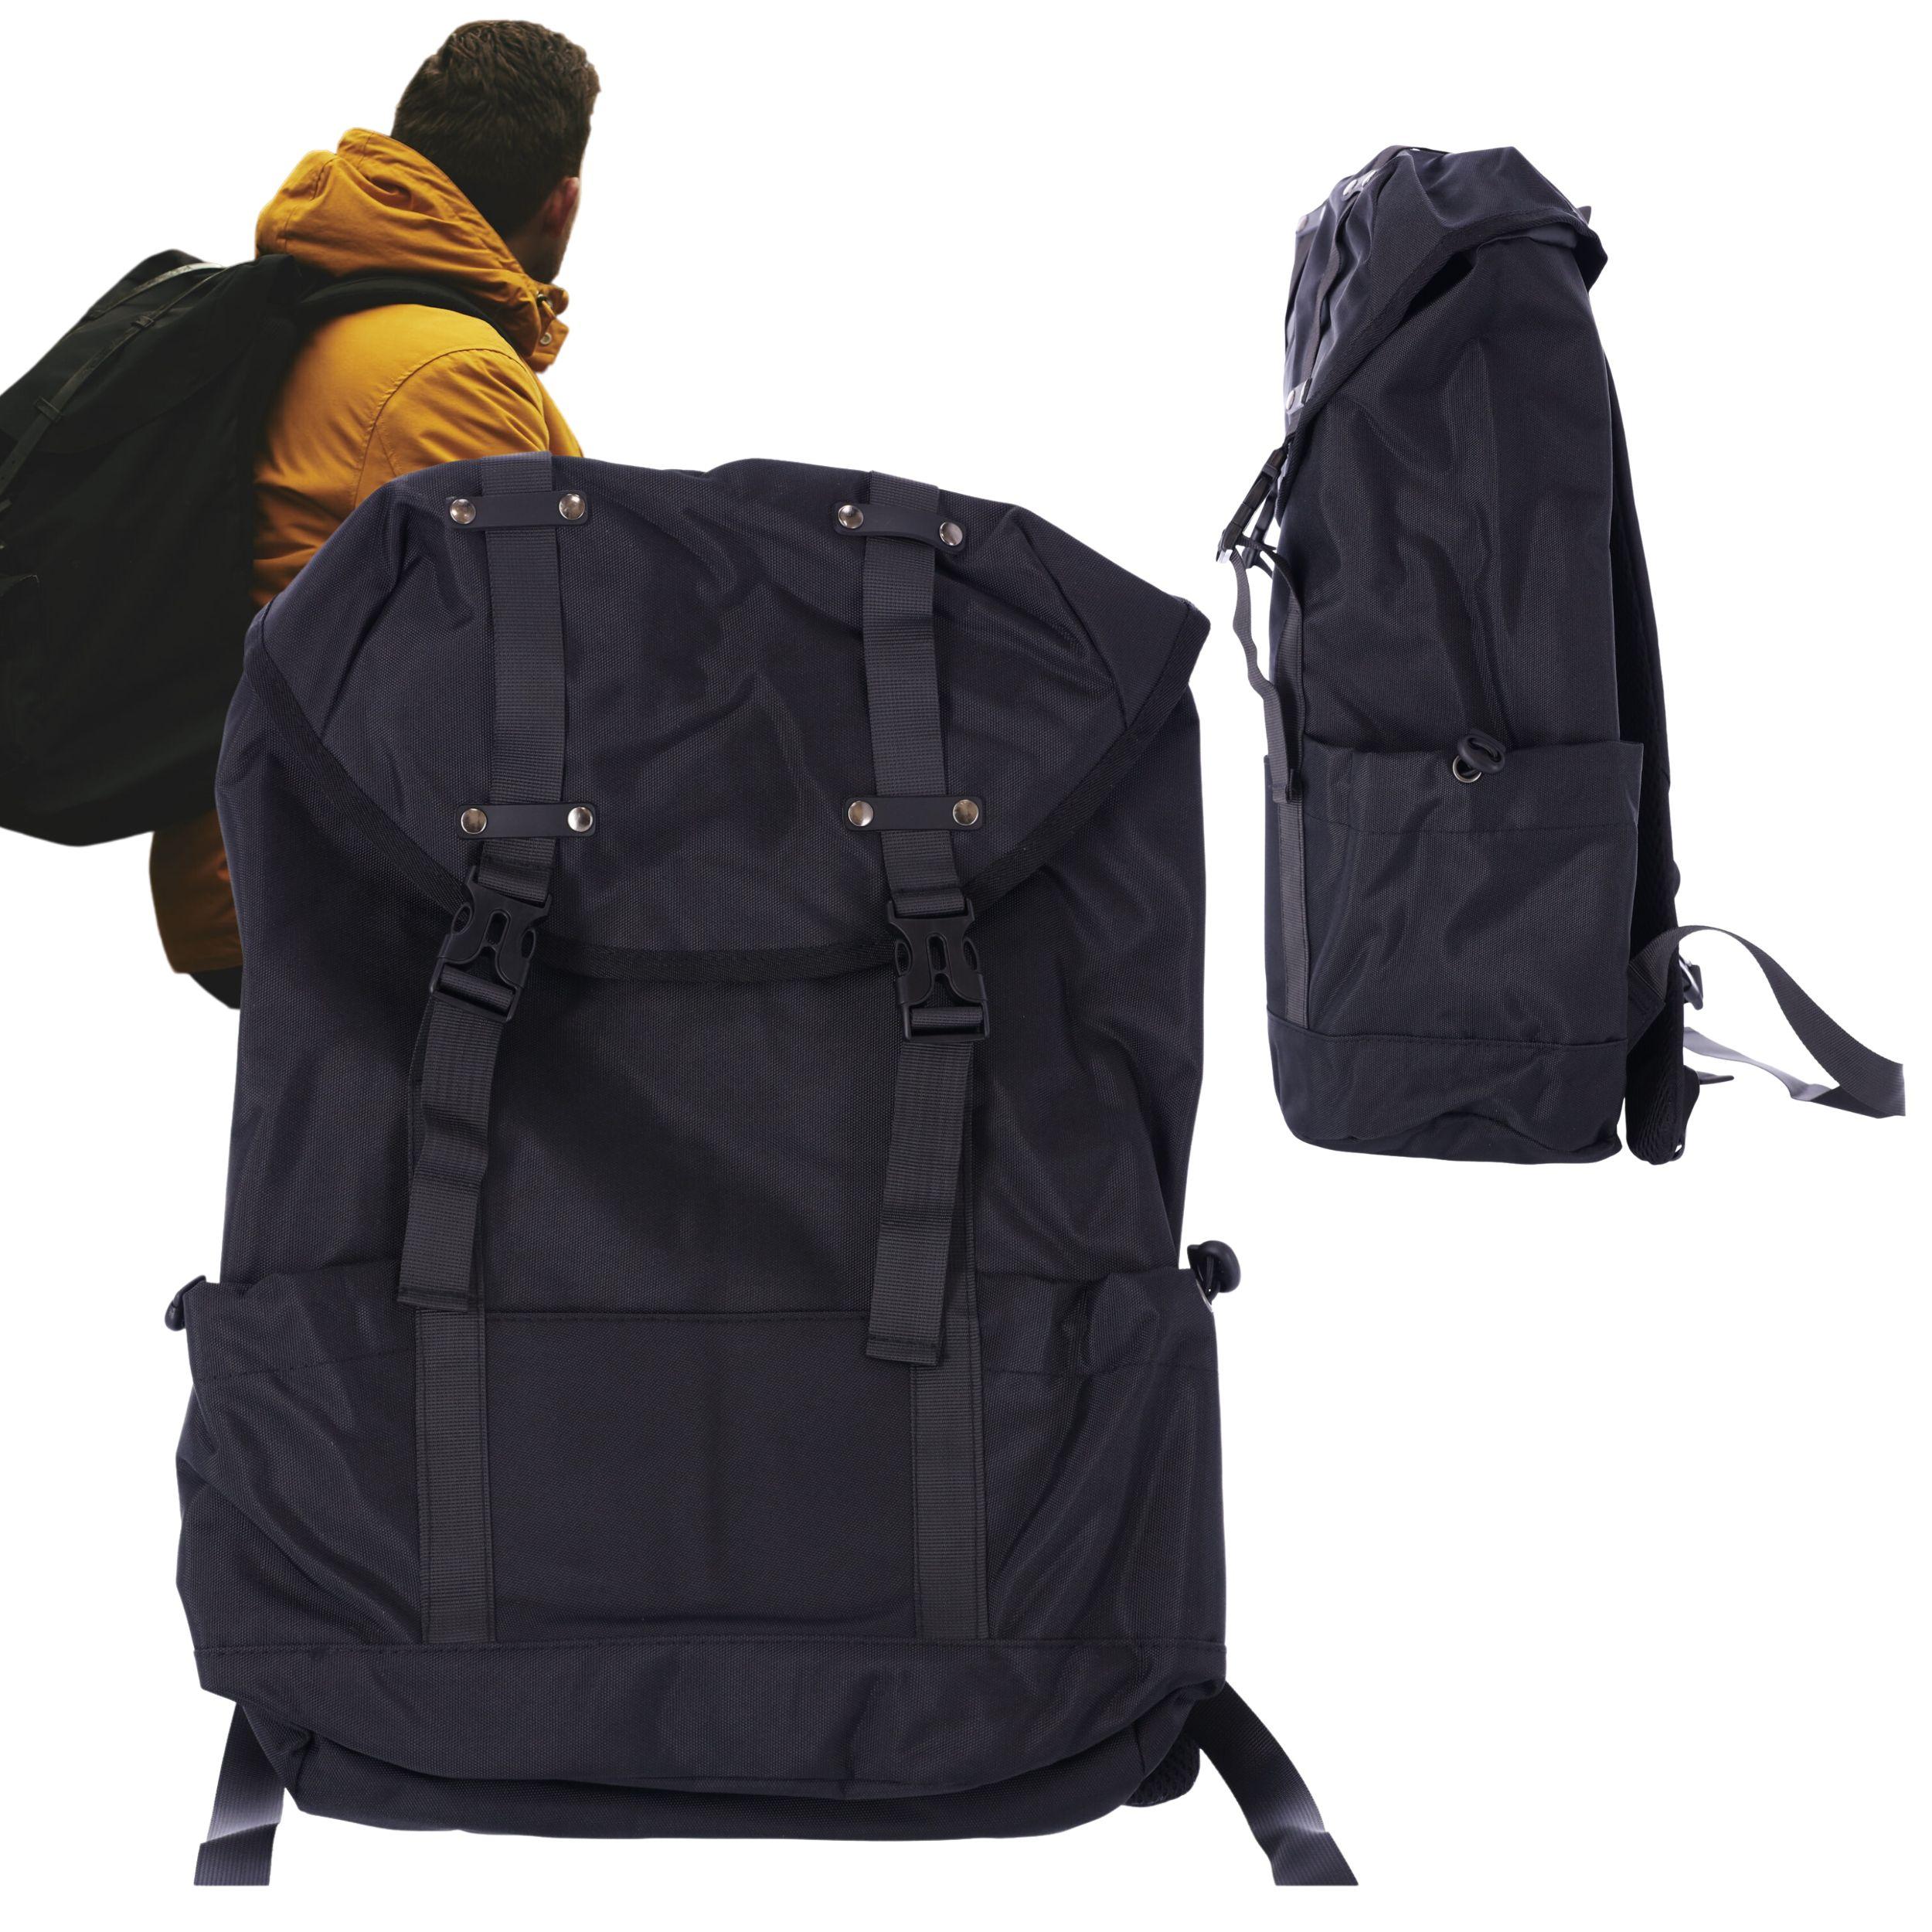 Plecak szkolny, podróżny z miejscem na laptopa 15,6" - czarny